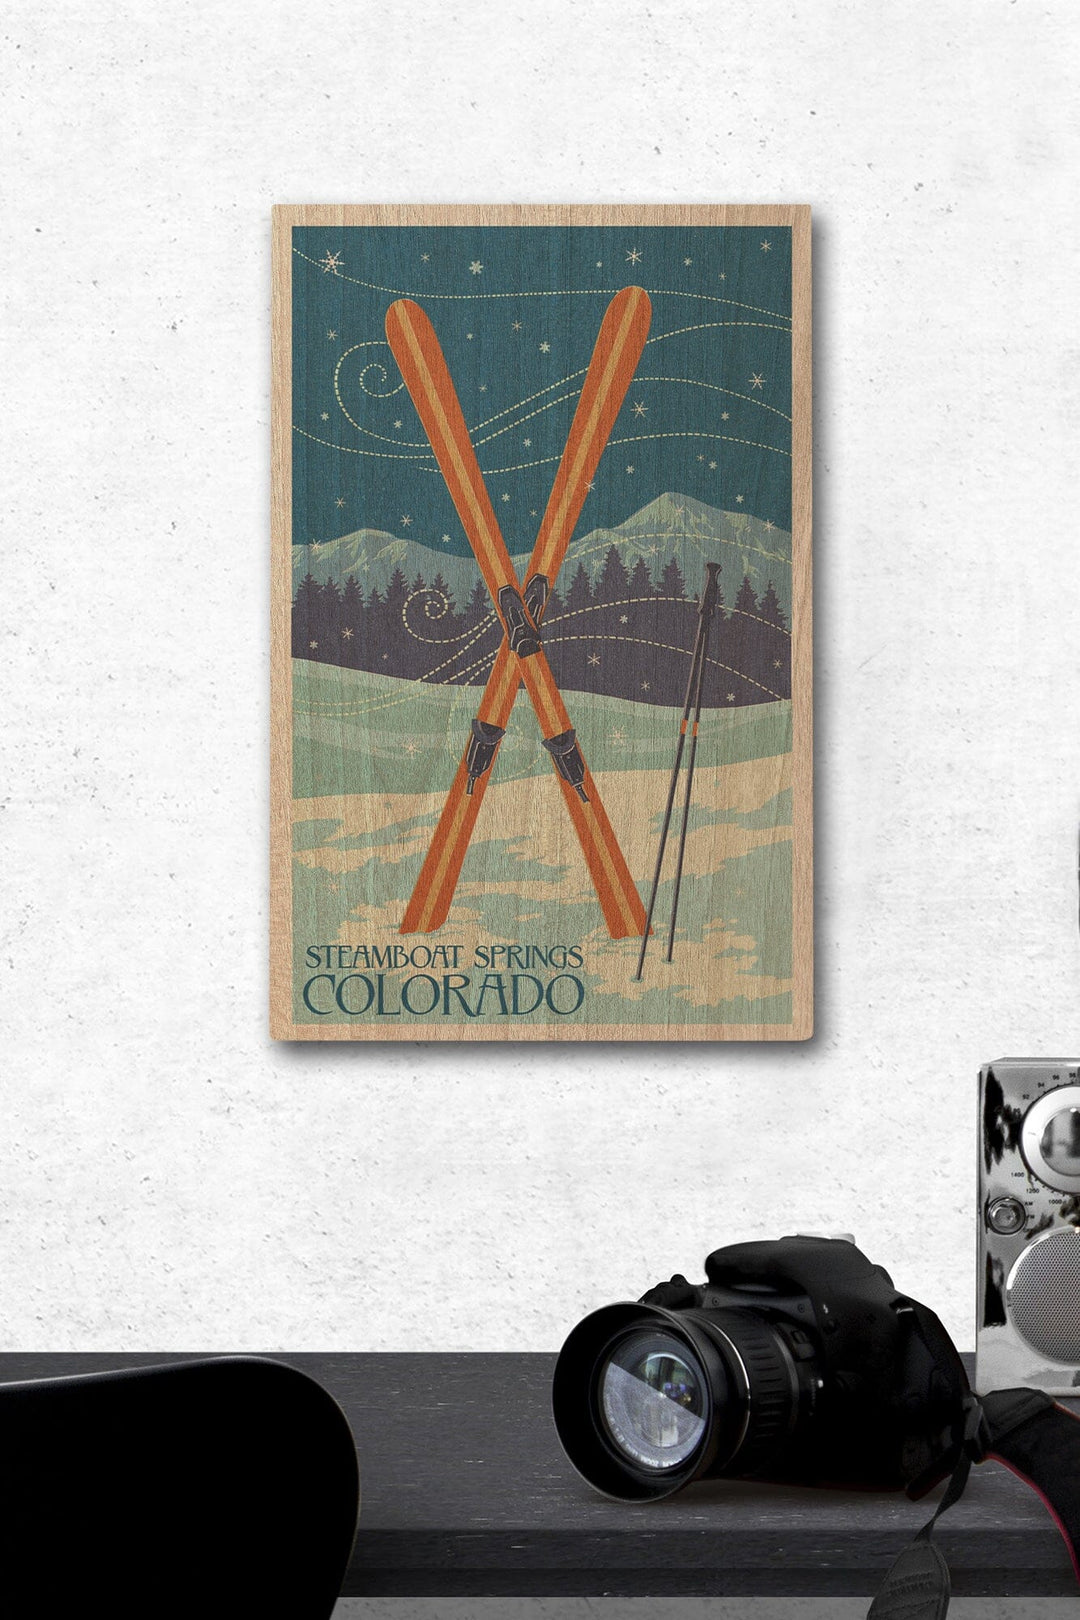 Steamboat Springs, Colorado, Crossed Skis, Letterpress, Lantern Press Artwork, Wood Signs and Postcards Wood Lantern Press 12 x 18 Wood Gallery Print 